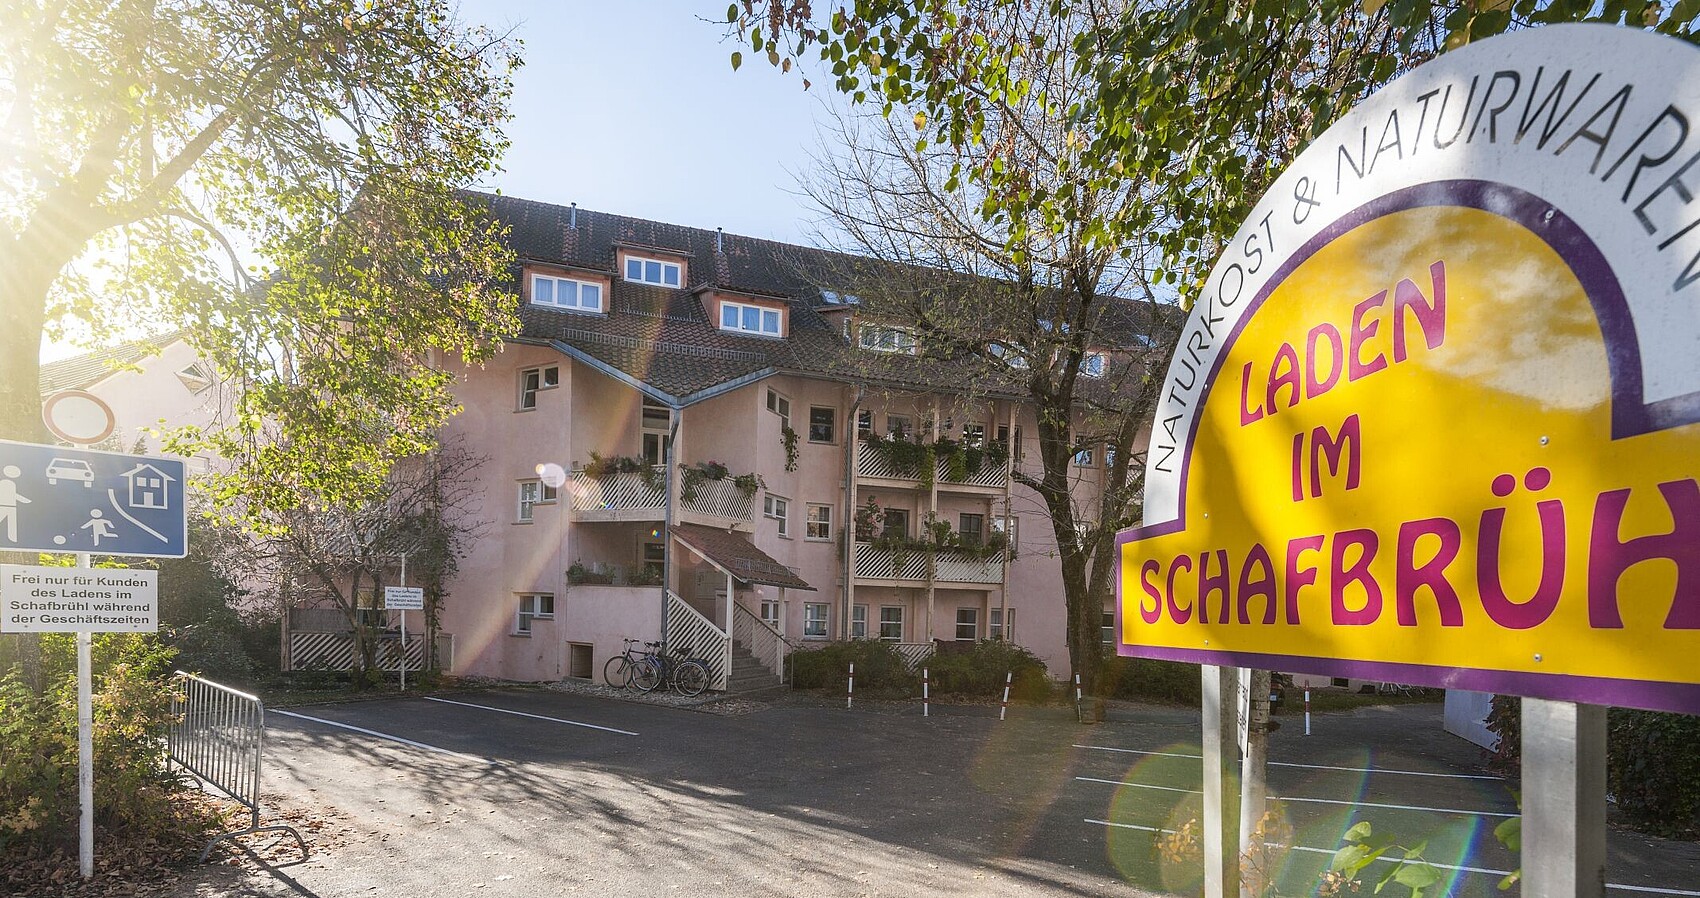 Siedlung Schafbrühl (Architekten J. Eble, B. Sambeth, W. Oed, G. Häfele, 1984-85), Tübingen, Baden-Württemberg